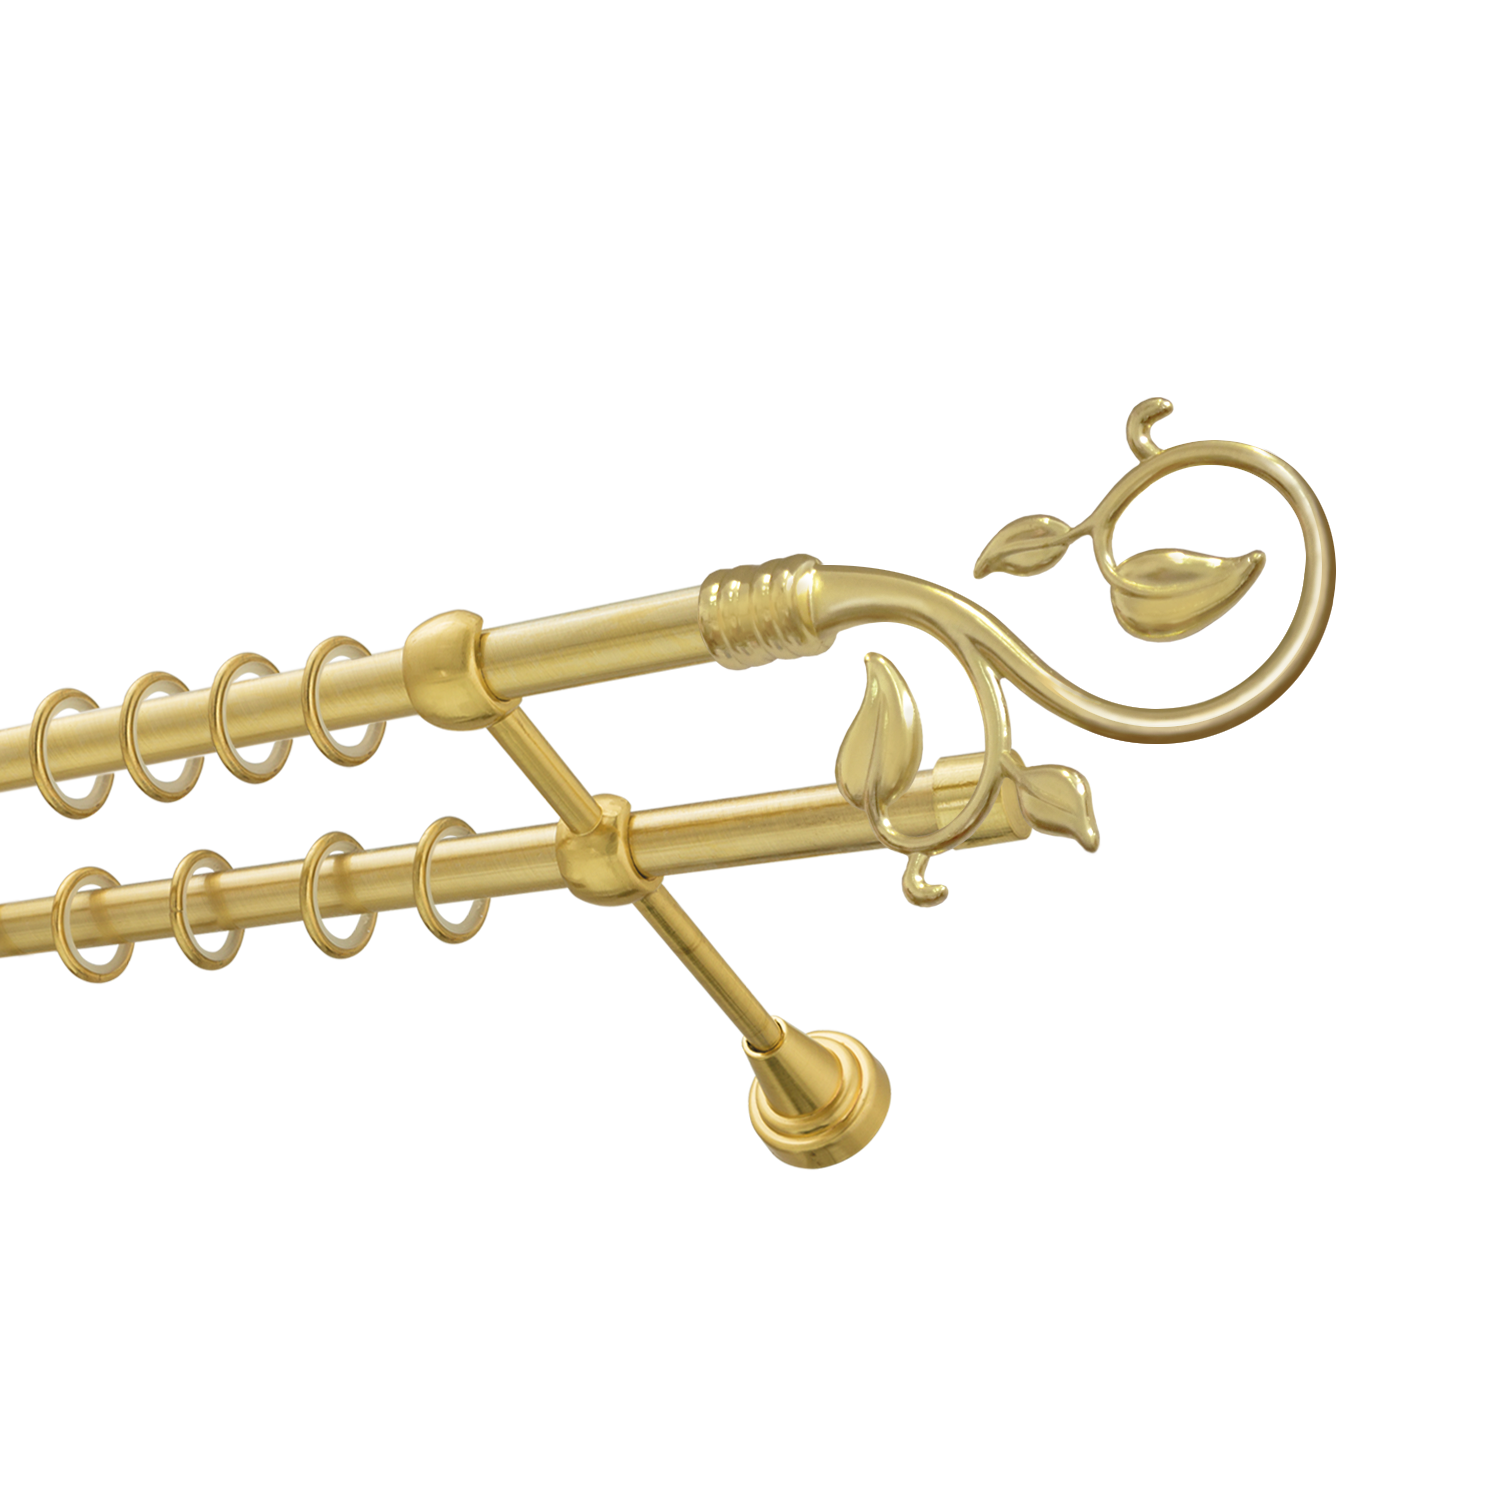 Металлический карниз для штор Амели, двухрядный 16/16 мм, золото, гладкая штанга, длина 180 см - фото Wikidecor.ru